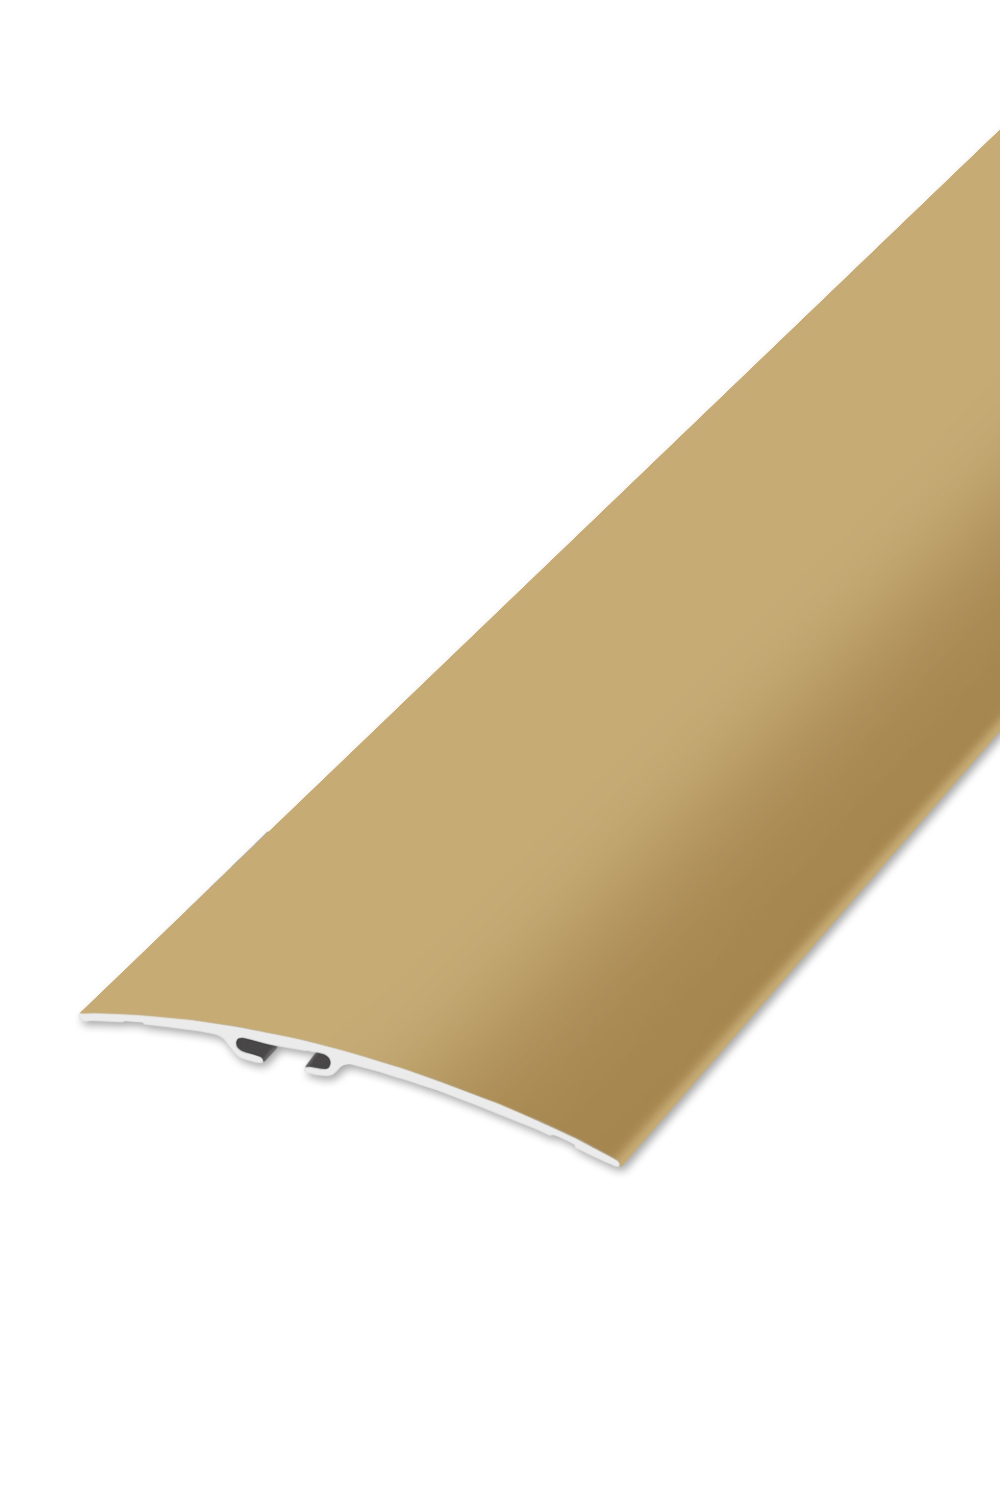 Přechodová lišta STANDARD 80 - Zlatá 90 cm